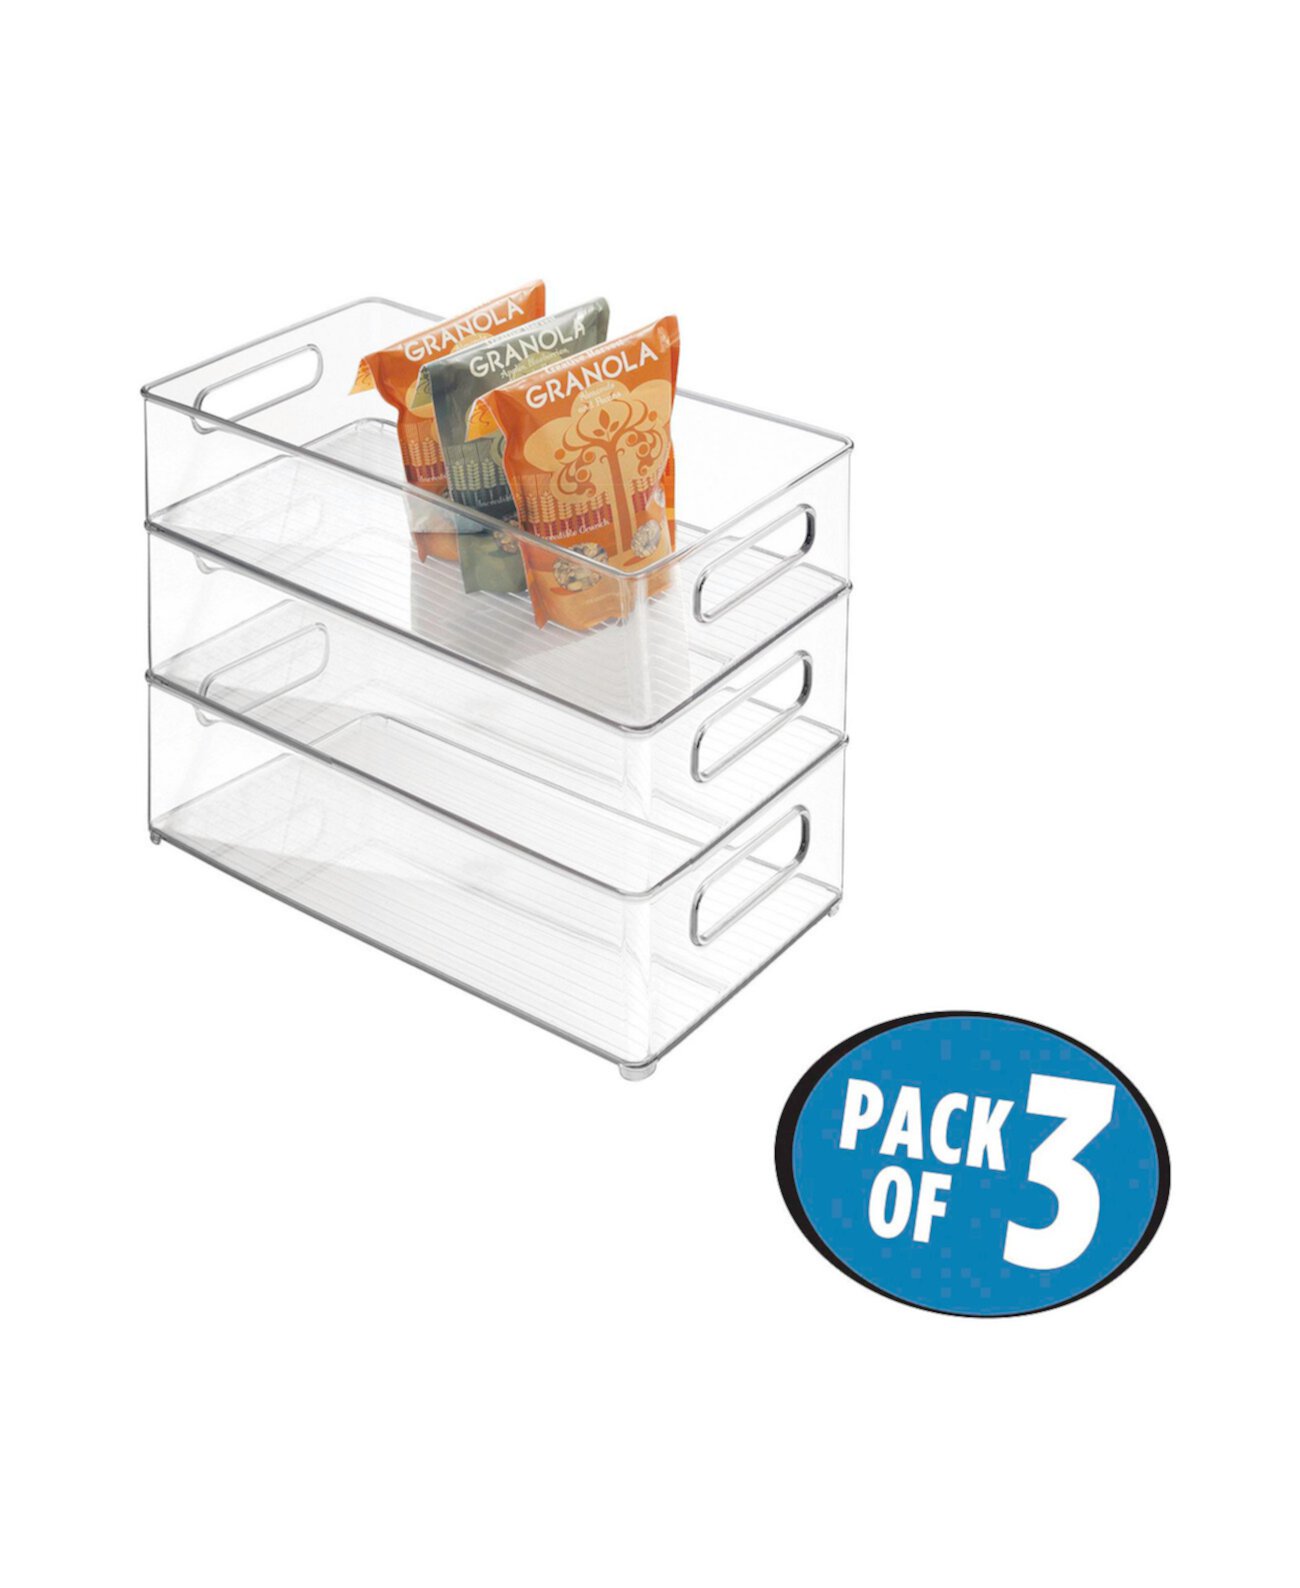 Пластиковый контейнер для хранения в холодильнике и морозильной камере с крышкой, набор из 3 шт. IDesign